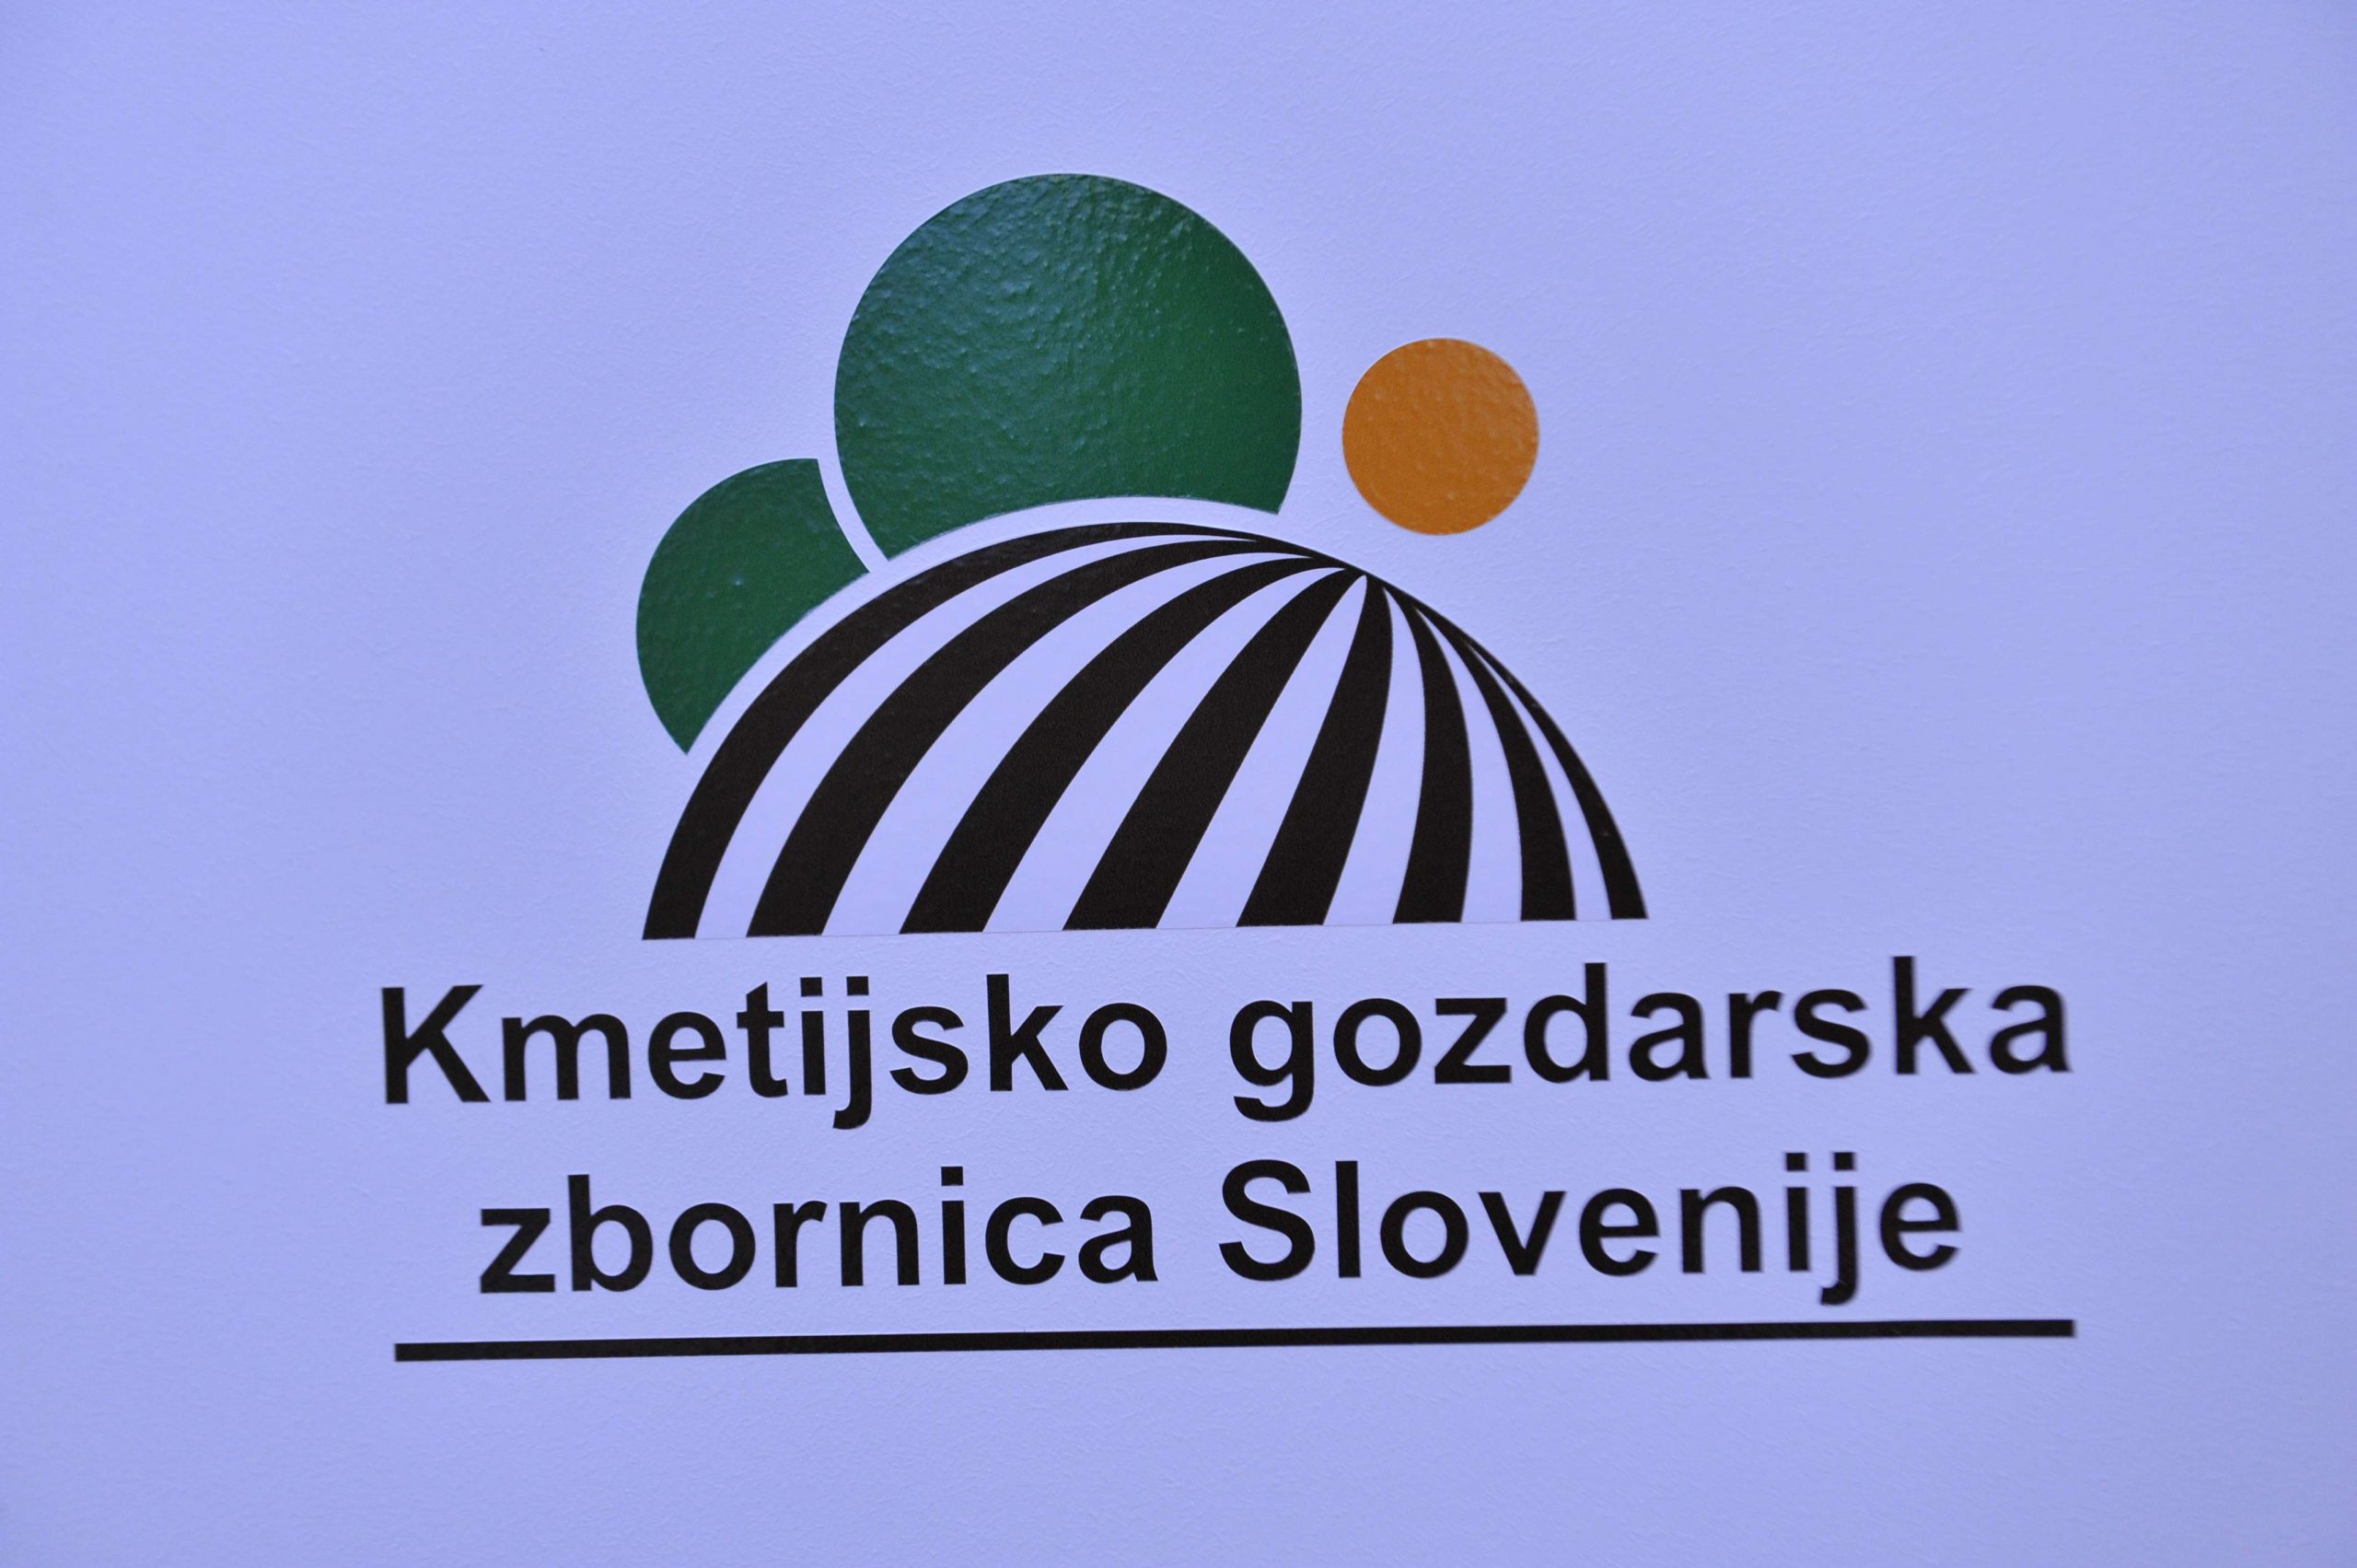 Kmetijsko gozdarska zbornica Slovenije, kgzs